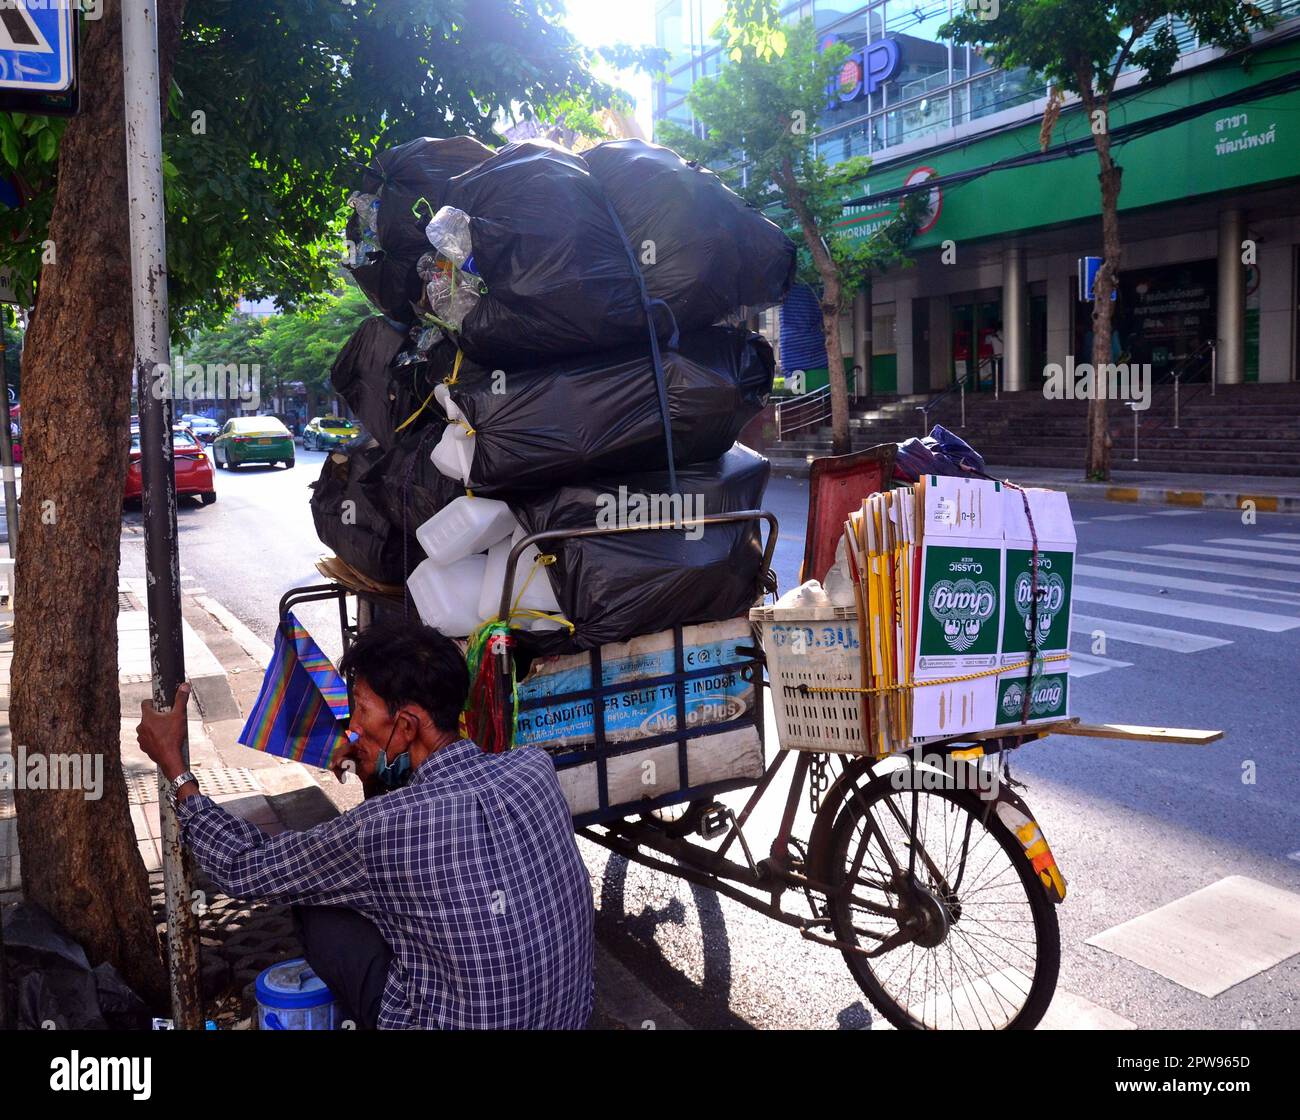 Travailleurs, Bangkok, Thaïlande, Asie. Un ancien collectionneur mâle de matériaux recyclés, comme les bouteilles en plastique et le carton, prend un repos dans le district de Silom. Son tricycle est chargé de sacs de matériaux collectés. Des charognards comme celui-ci réduisent les décombrées dans les rues de la ville, bien que leurs revenus soient faibles. Certains déchargeurs qui sont également appelés sa leng, fouillent dans des poubelles à la recherche de bouteilles, de canettes et de carton pour le commerce de nourriture et d'autres marchandises dans une coopérative de recyclage. Certains vendent ce qu'ils trouvent. Travail, travailleur, travail, emploi, emploi, gagner de l'argent, ramassage des ordures, thème de la pauvreté. Banque D'Images